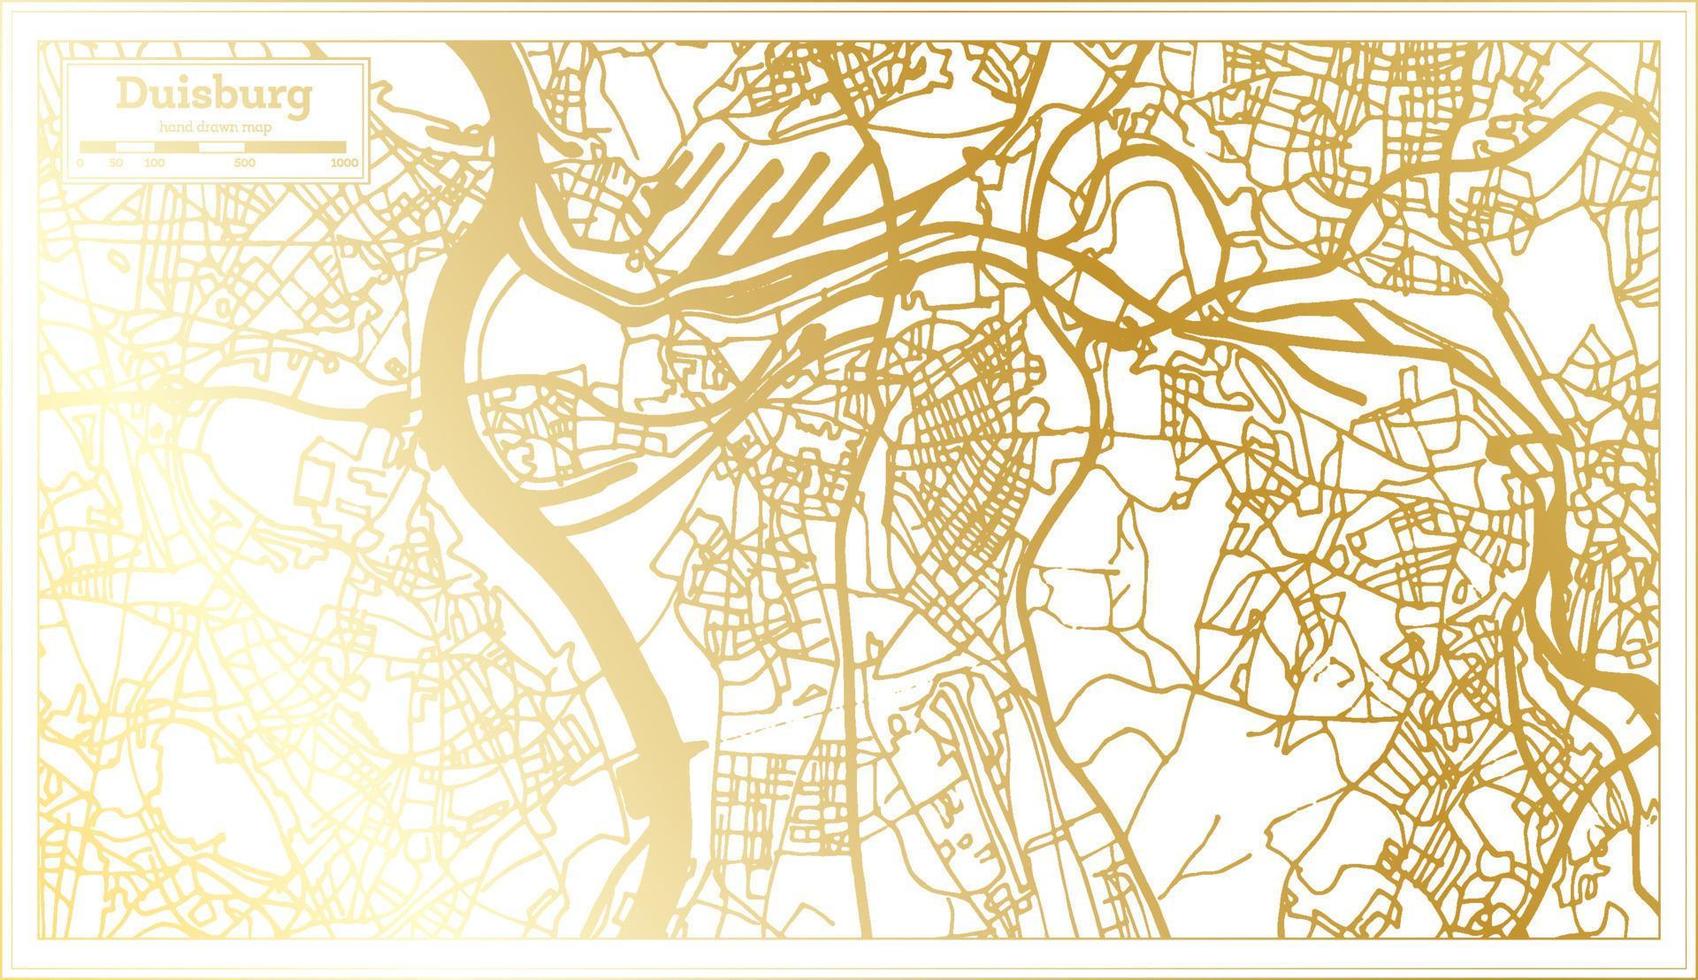 plan de la ville de duisburg allemagne dans un style rétro de couleur dorée. carte muette. vecteur